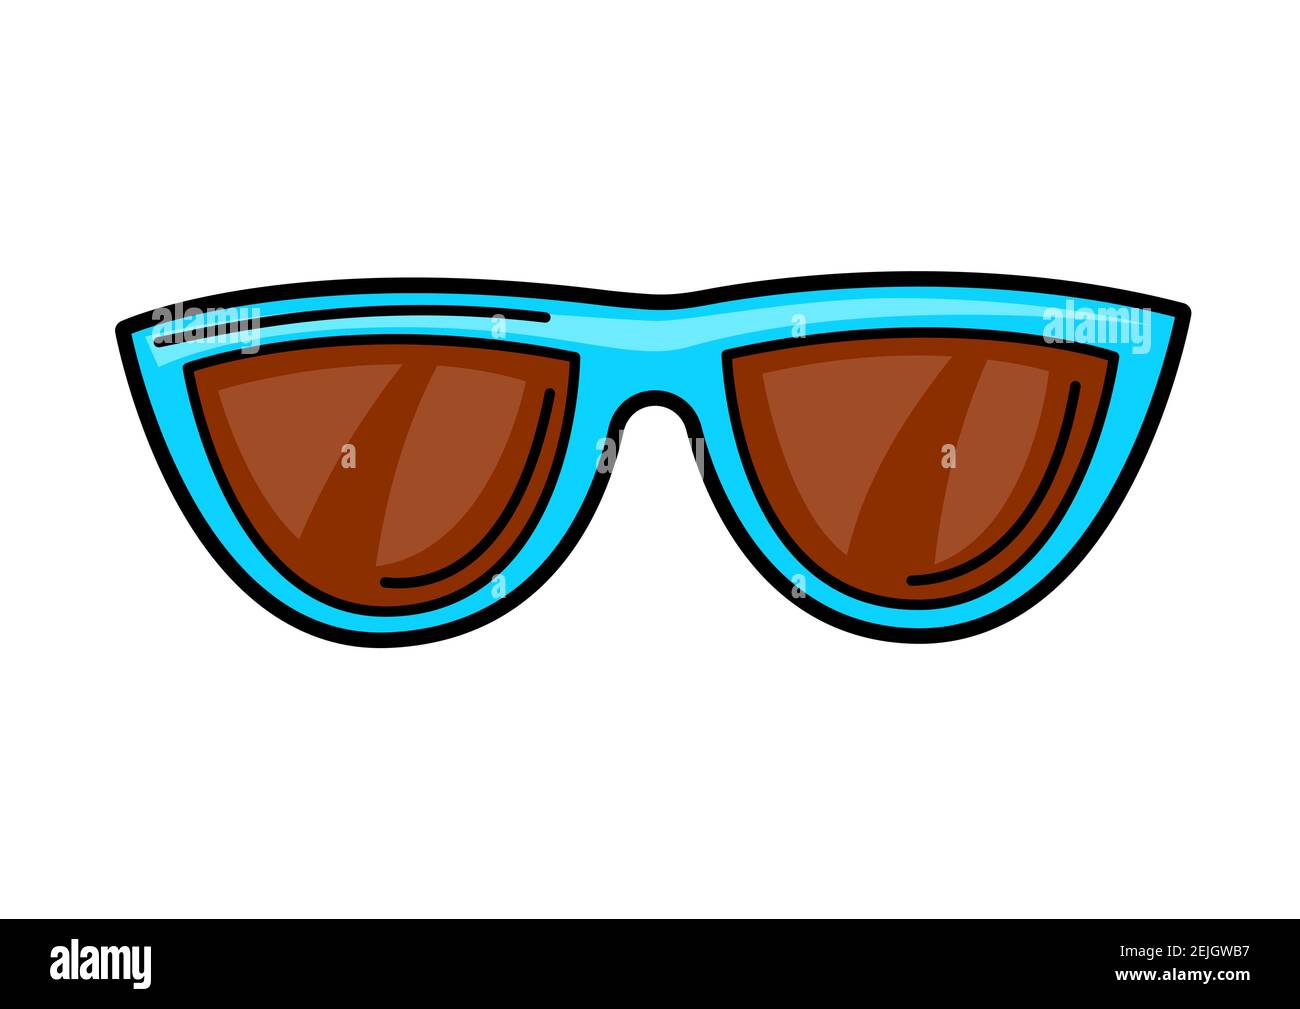 makkelijk te gebruiken op gang brengen Weg Illustration of cartoon sunglasses Stock Vector Image & Art - Alamy